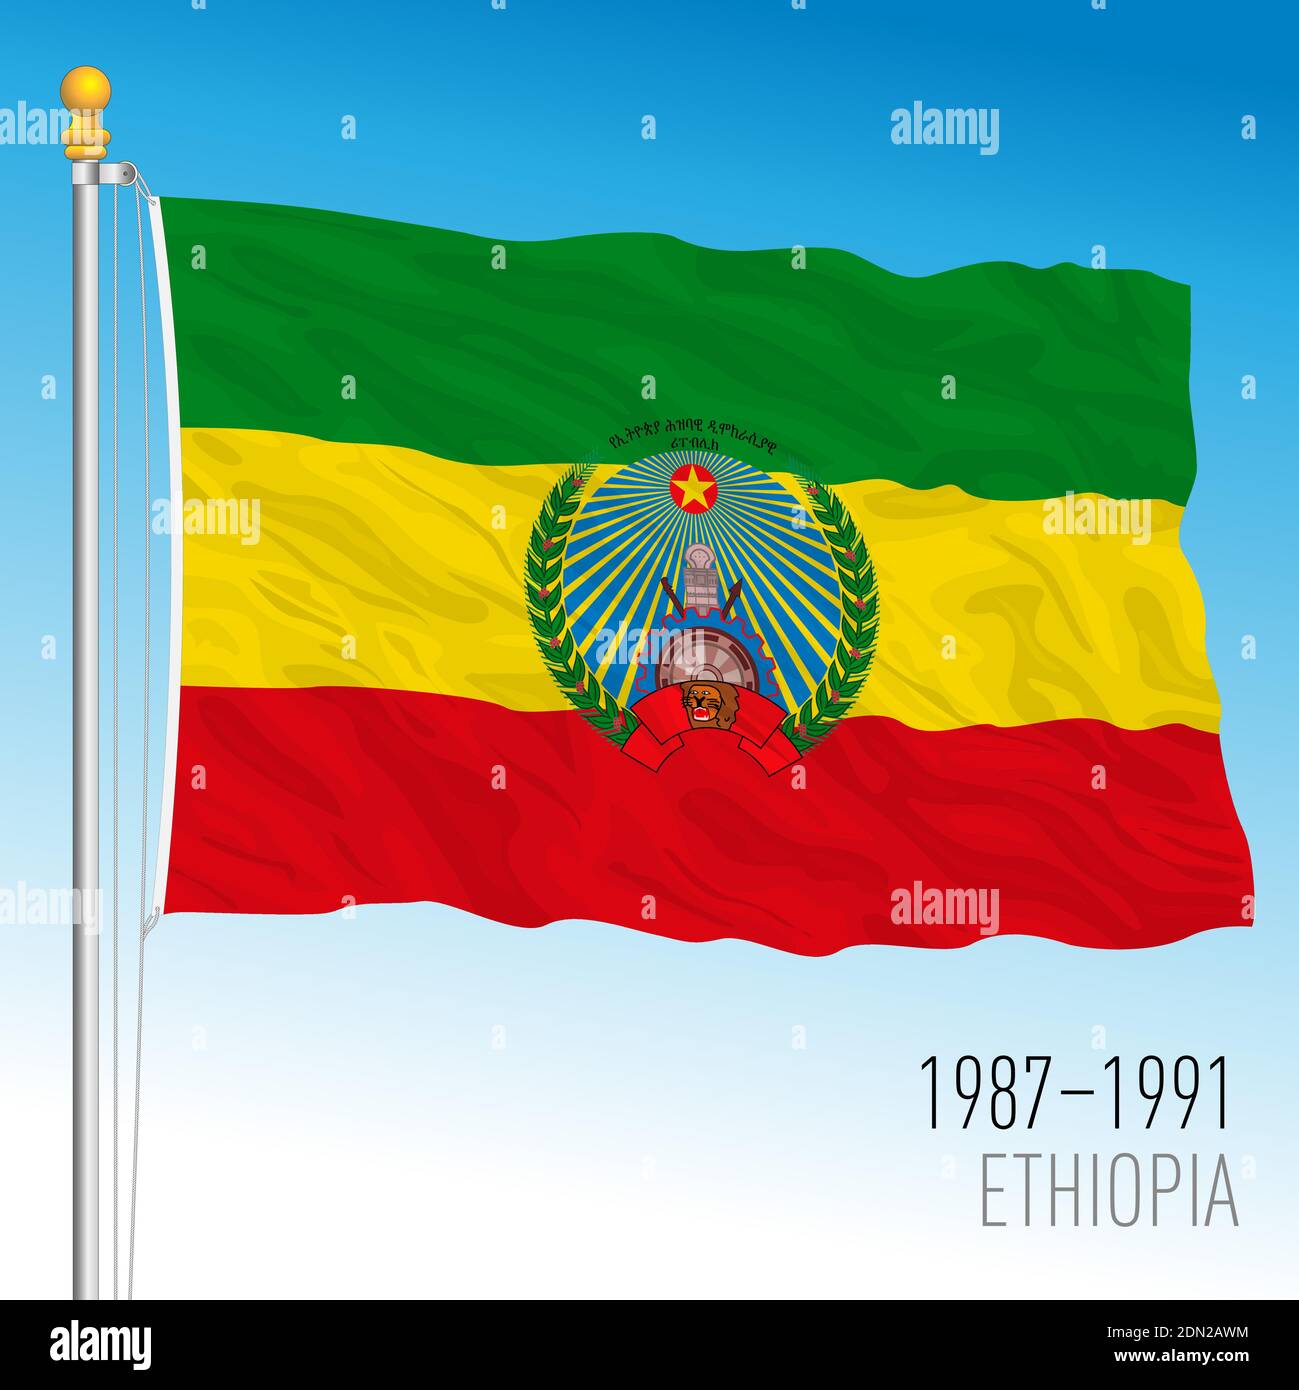 Äthiopische historische Flagge, 1987 - 1991, Äthiopien, Vektorgrafik auf dem blauen Himmel Hintergrund Stock Vektor